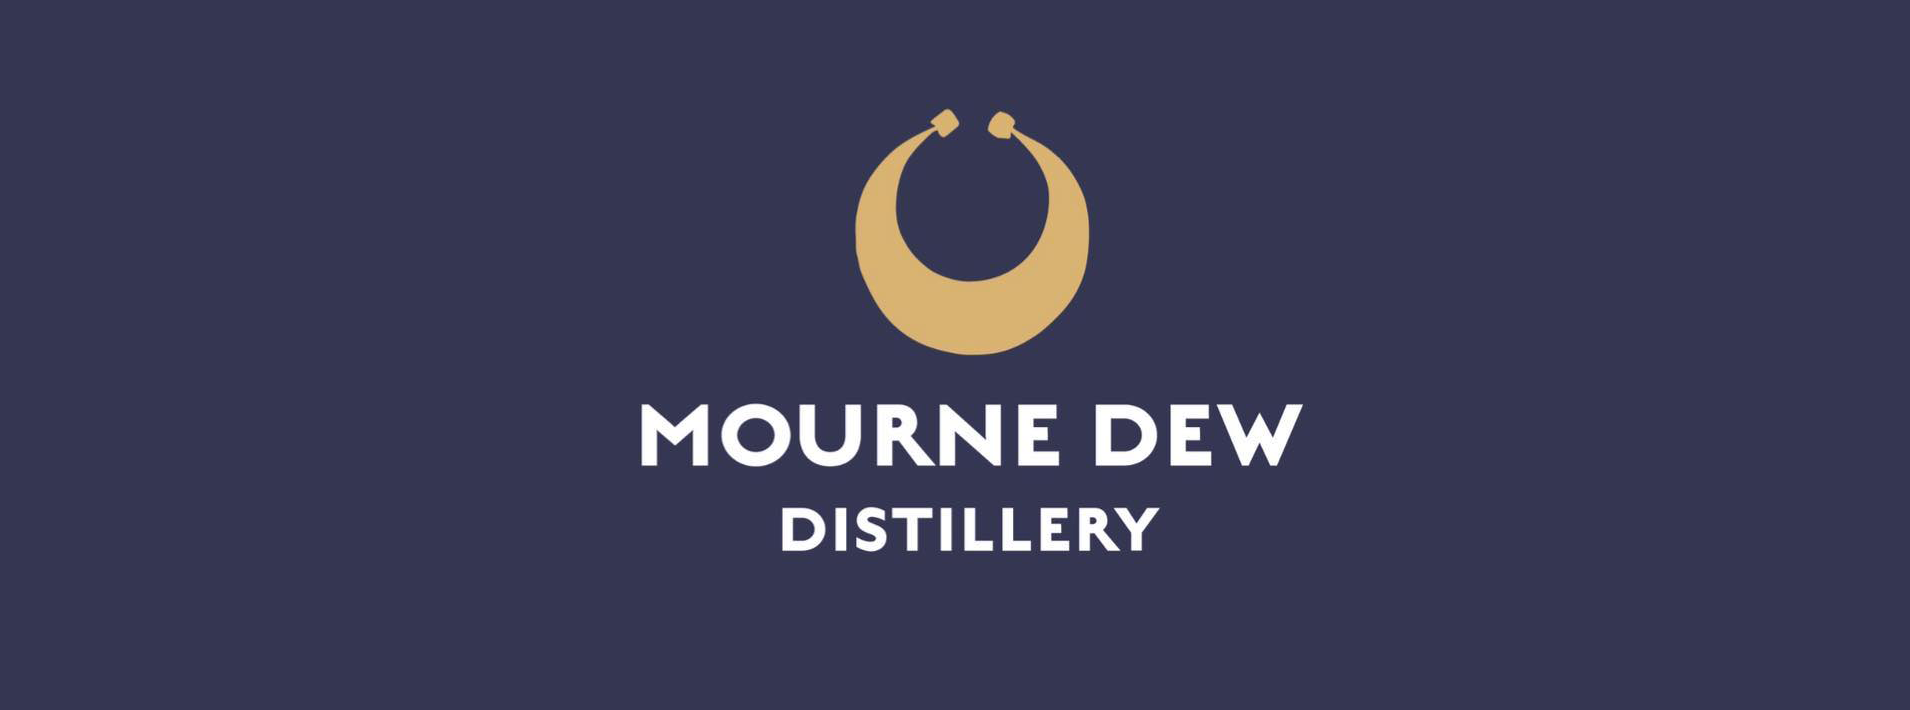 Mourne Dew Distillery